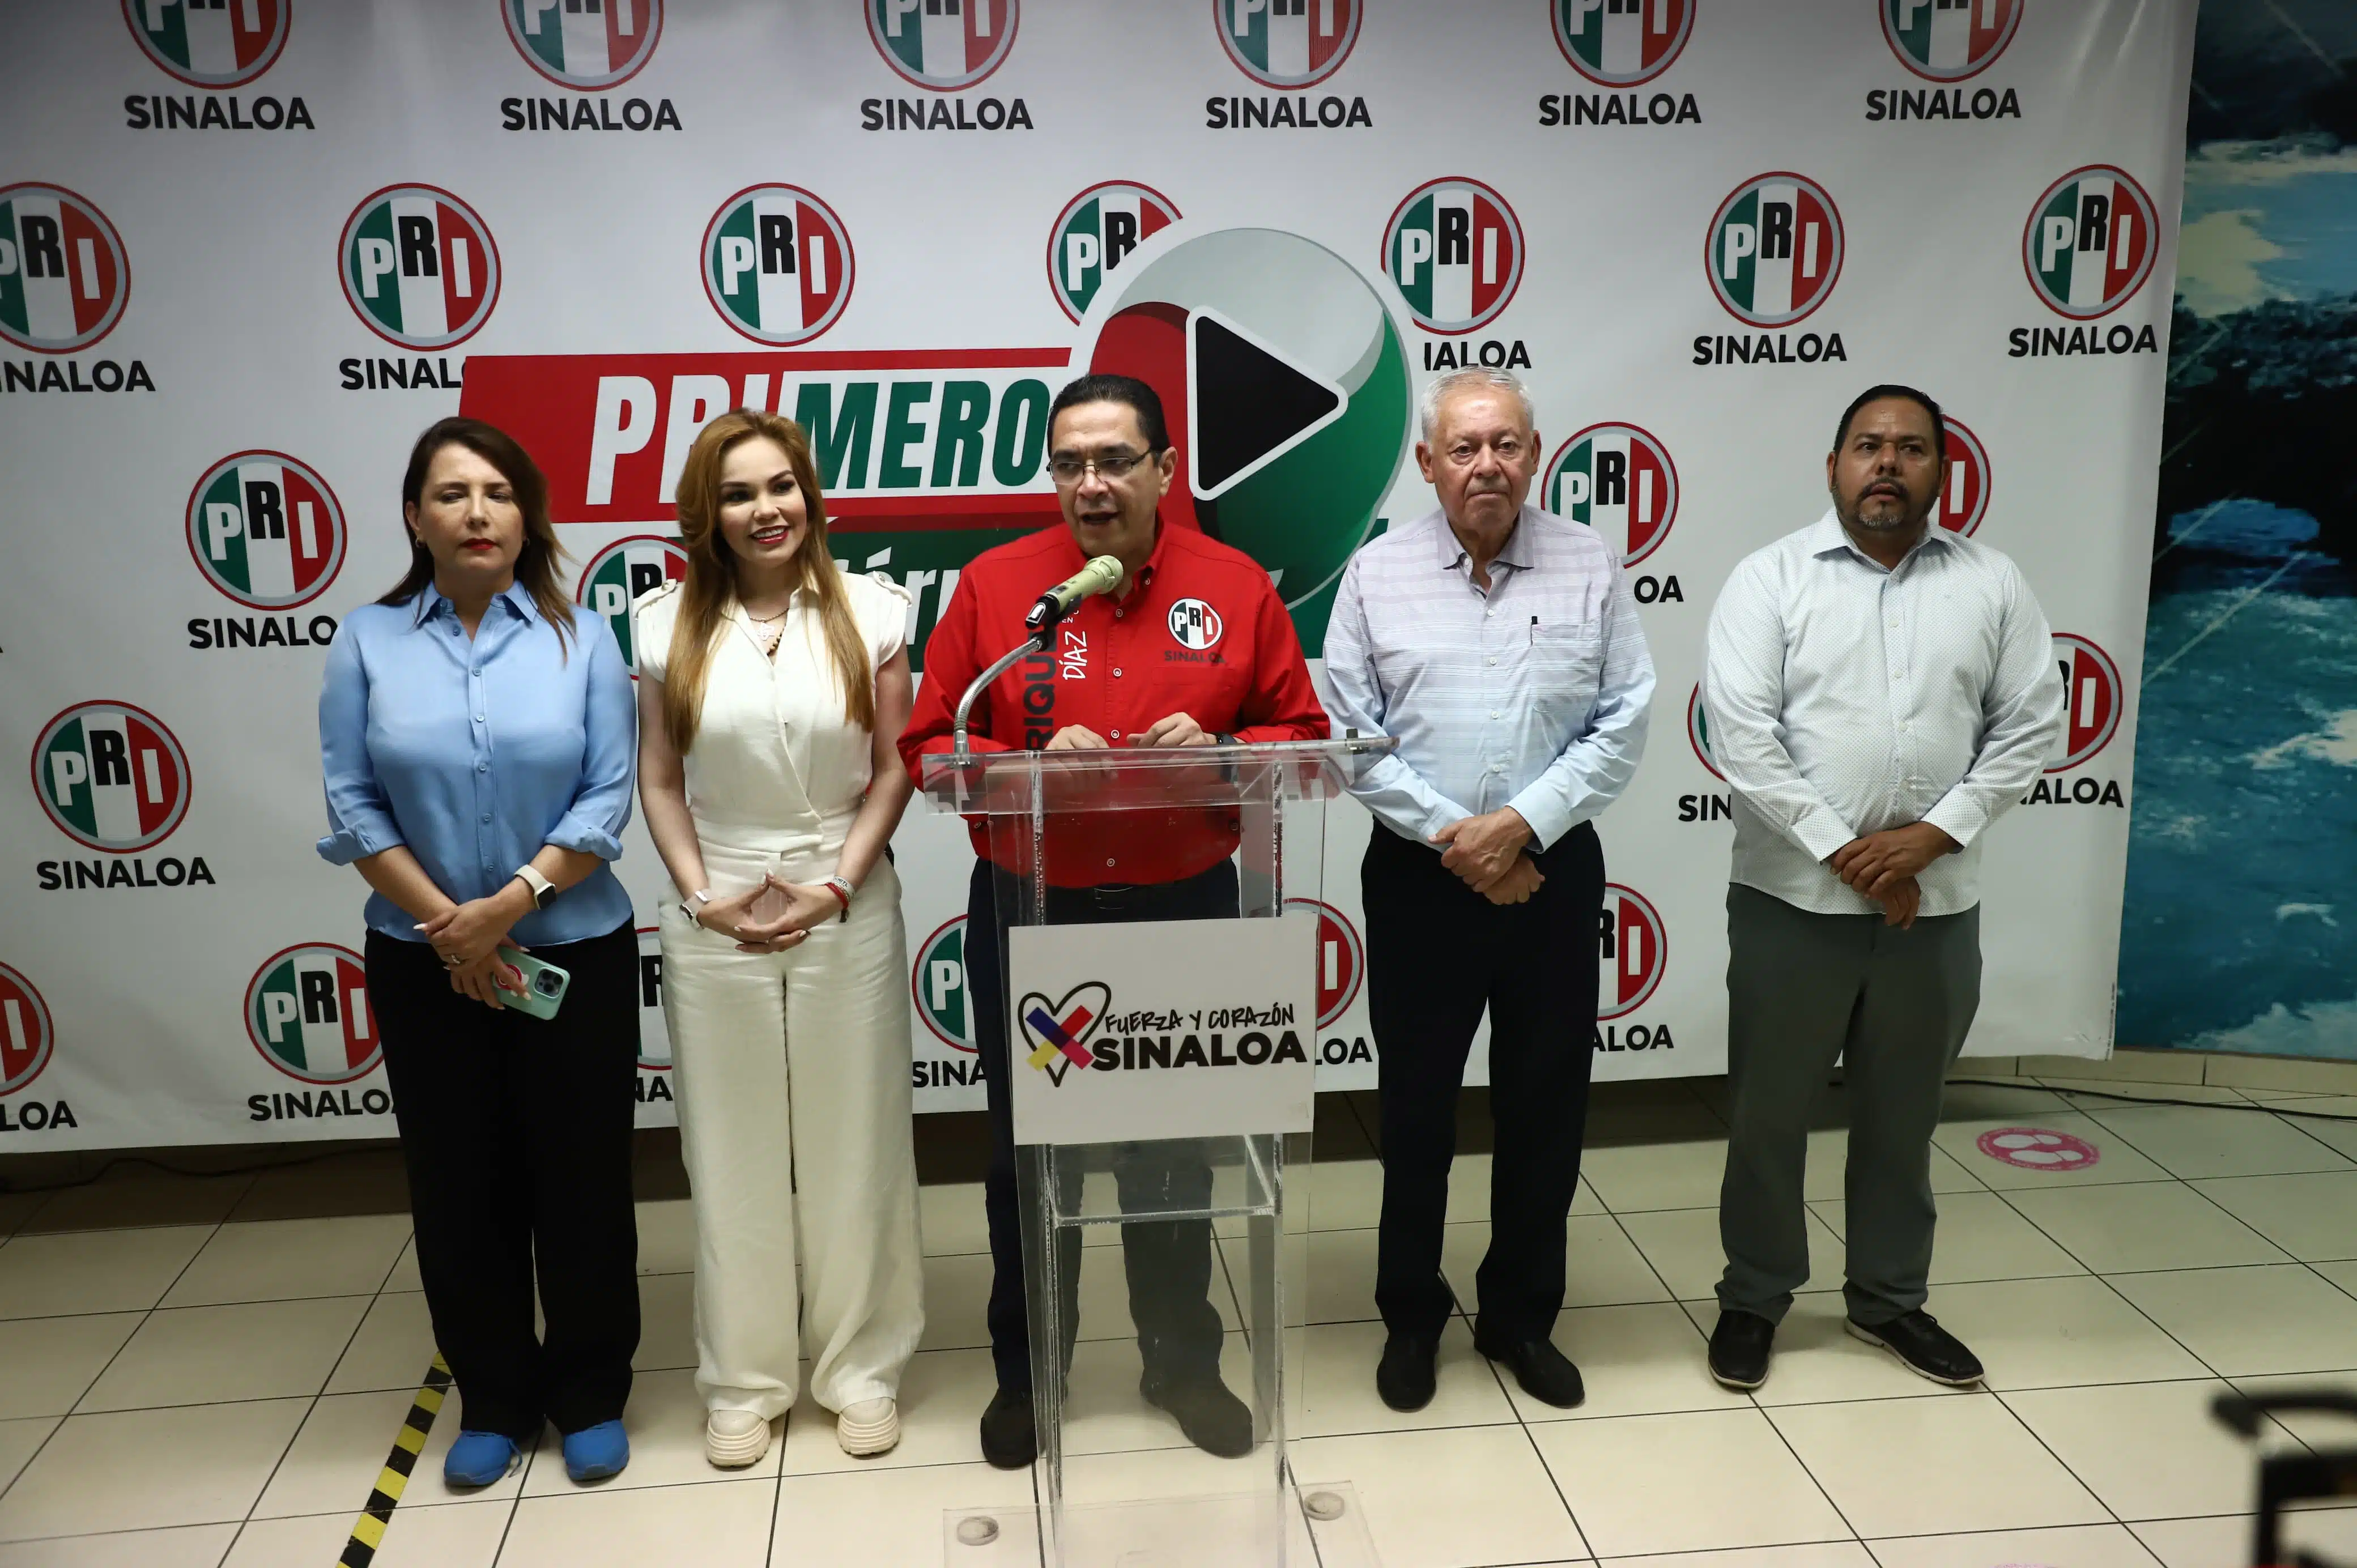 Enrique Díaz, delegado del Comité Ejecutivo Nacional del PRI en Sinaloa, dando un discurso en una conferencia de prensa en Culiacán